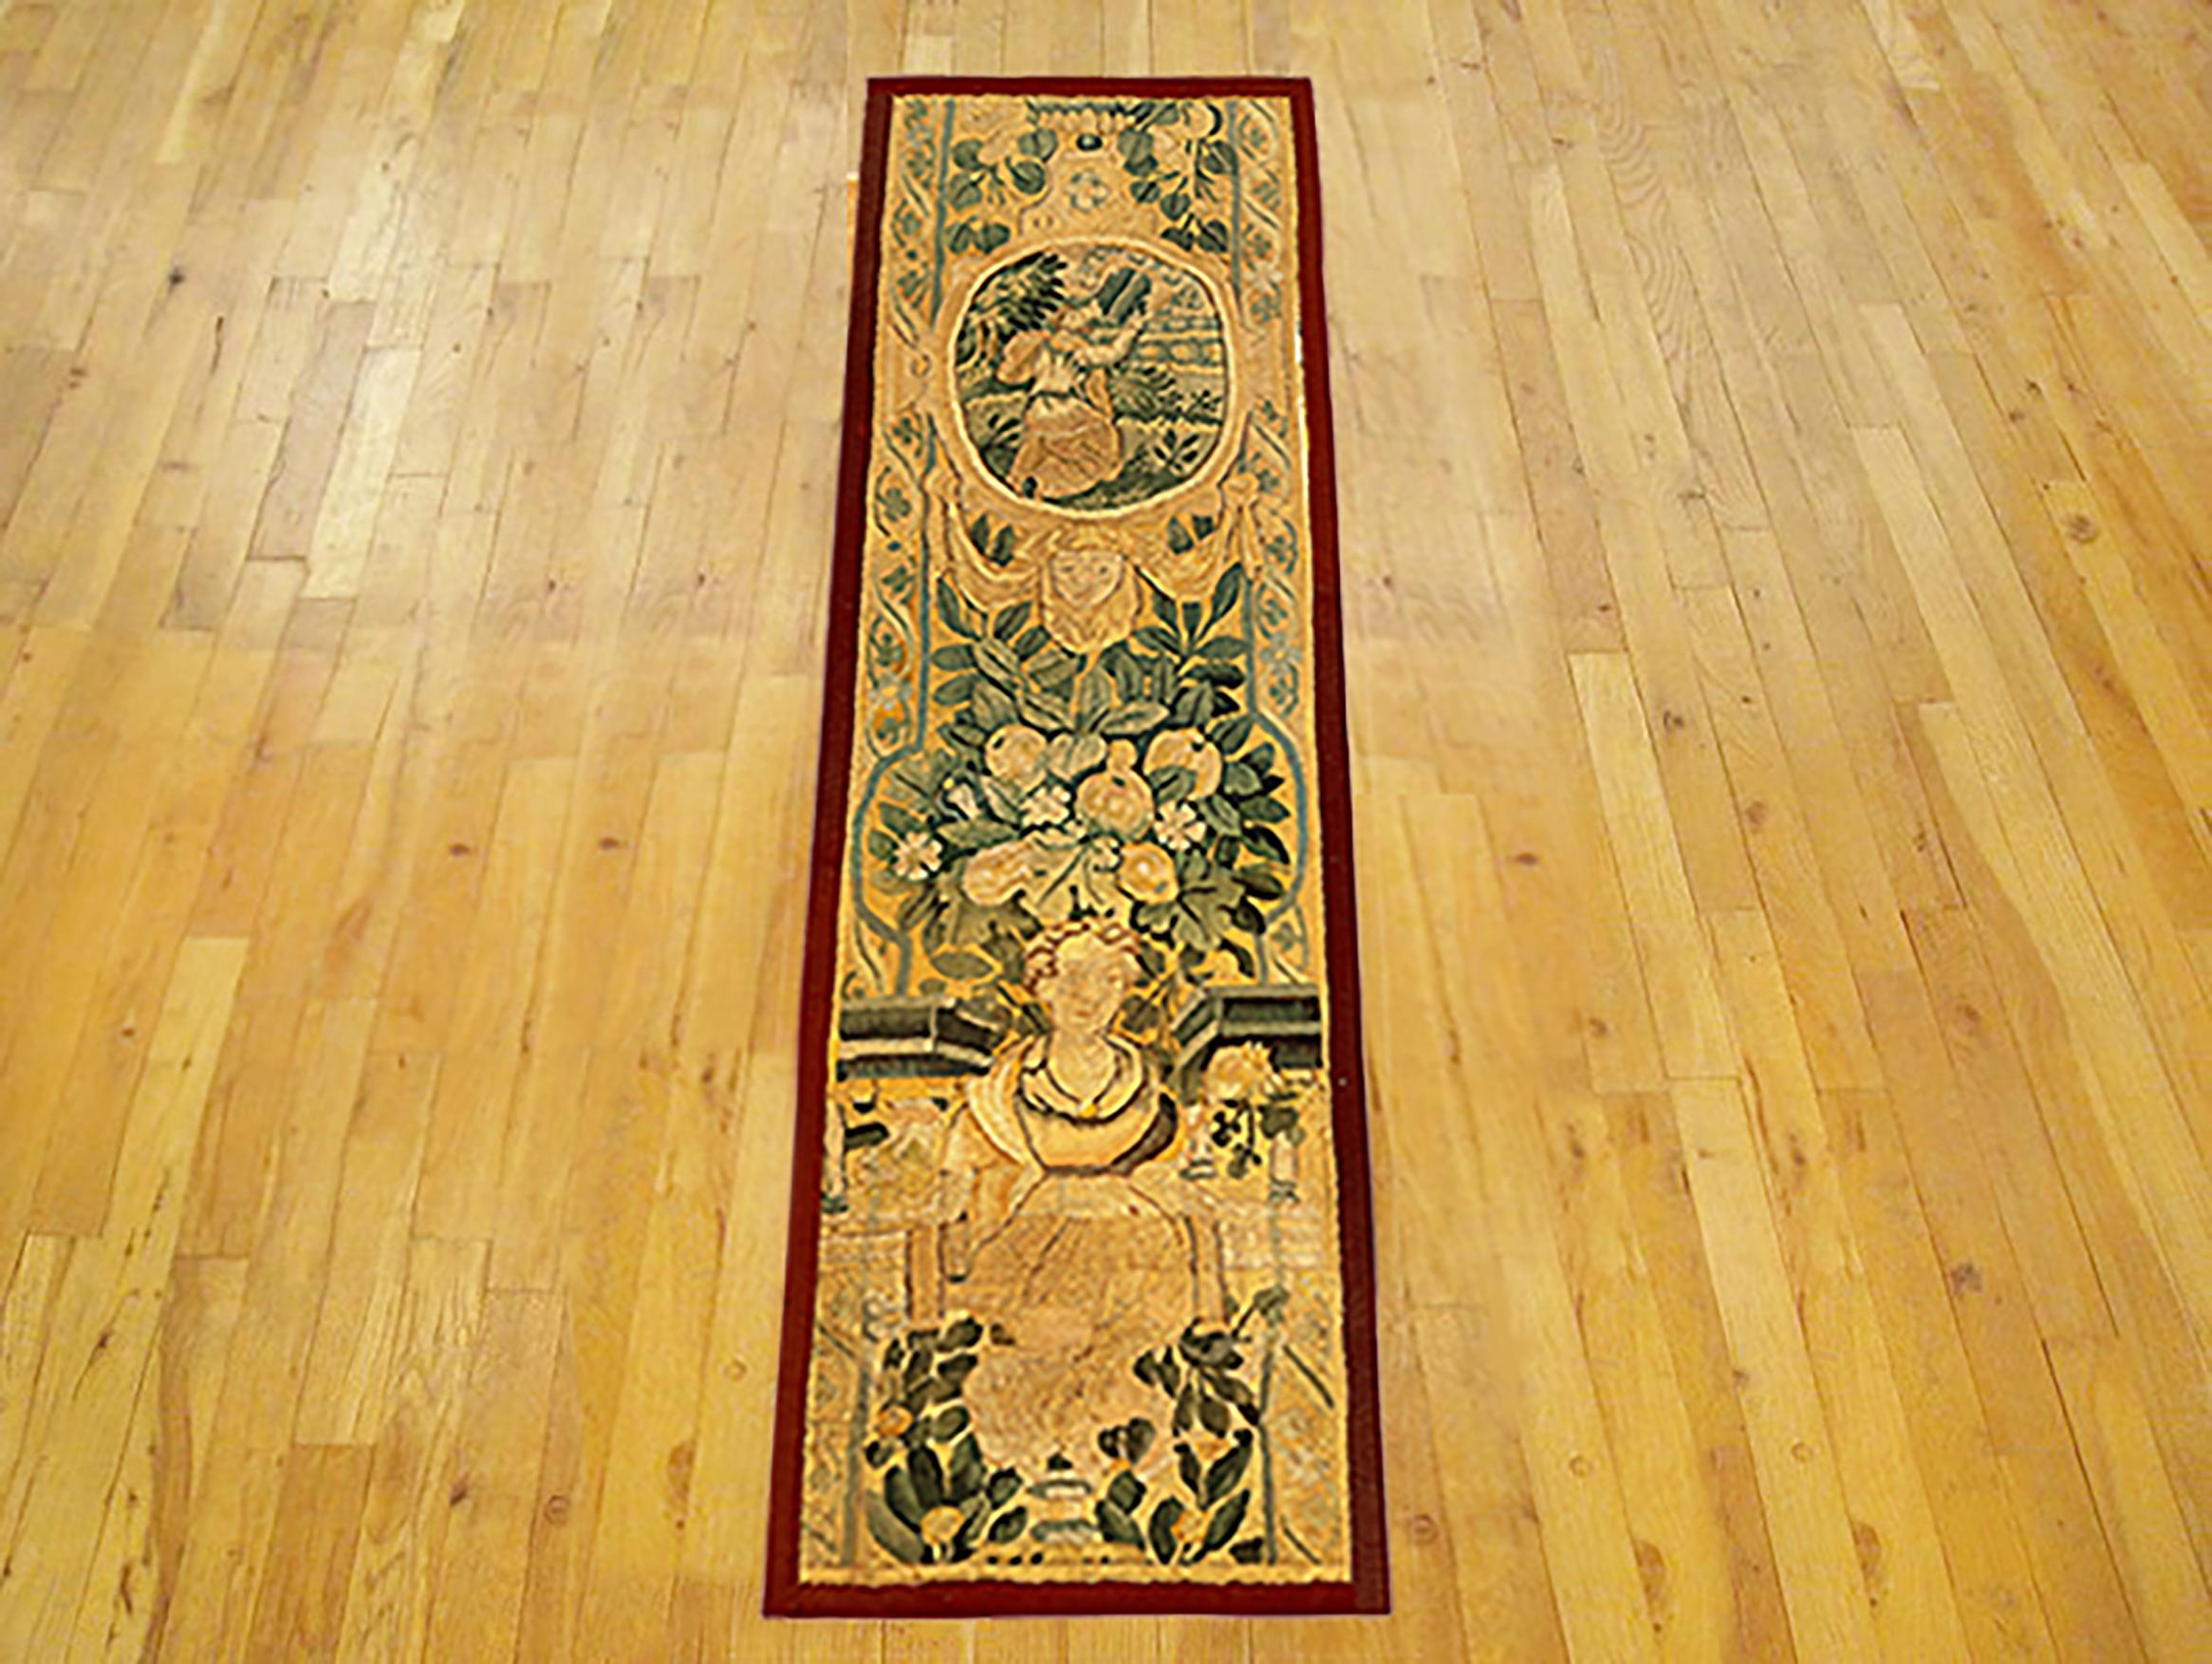 Eine historische flämische Wandteppichplatte aus dem 17. Dieses vertikal ausgerichtete dekorative Wandteppich-Paneel zeigt unten eine königliche weibliche Figur, darüber eine florale Reserve und oben eine weitere königliche weibliche Figur in einer